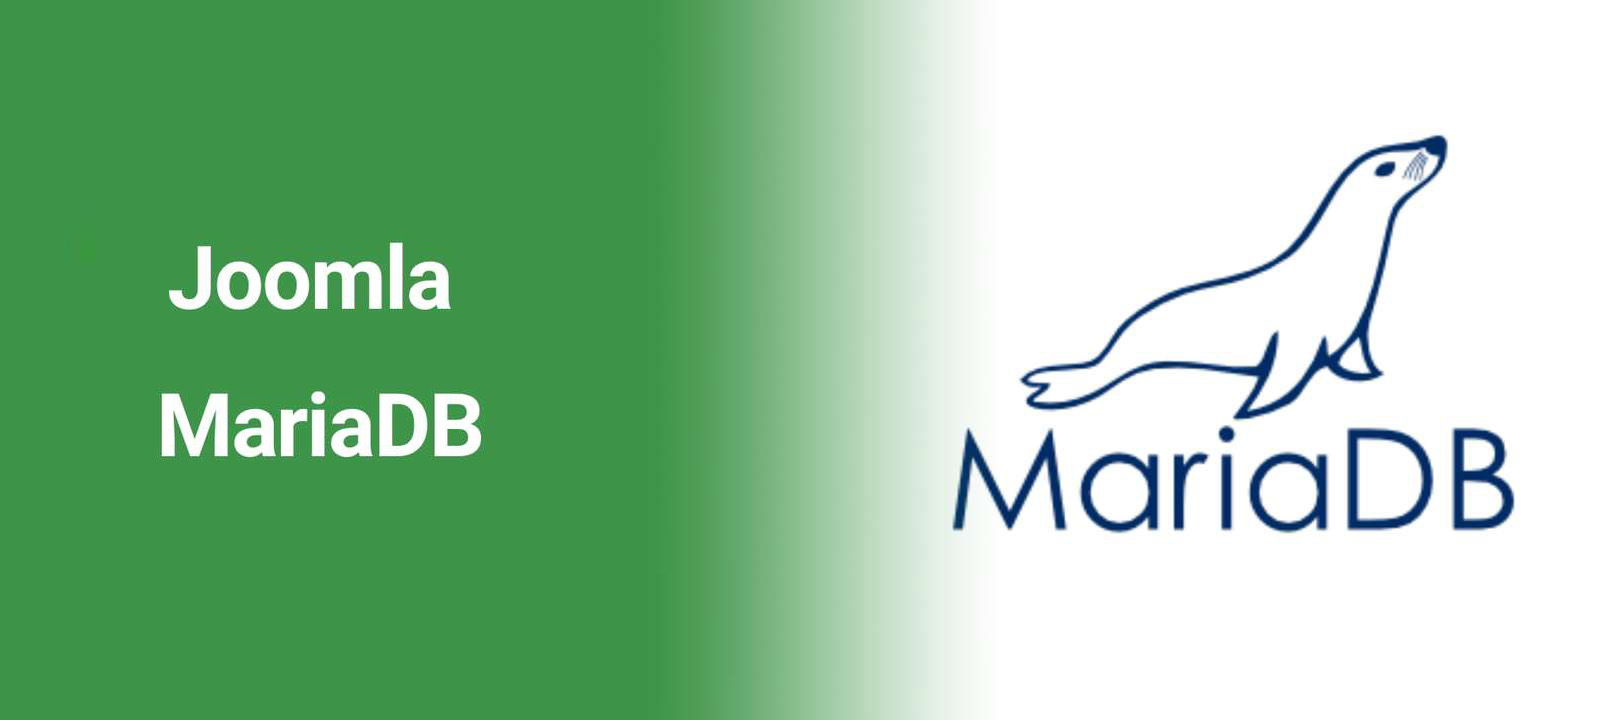 Joomla是否支持MariaDB数据库